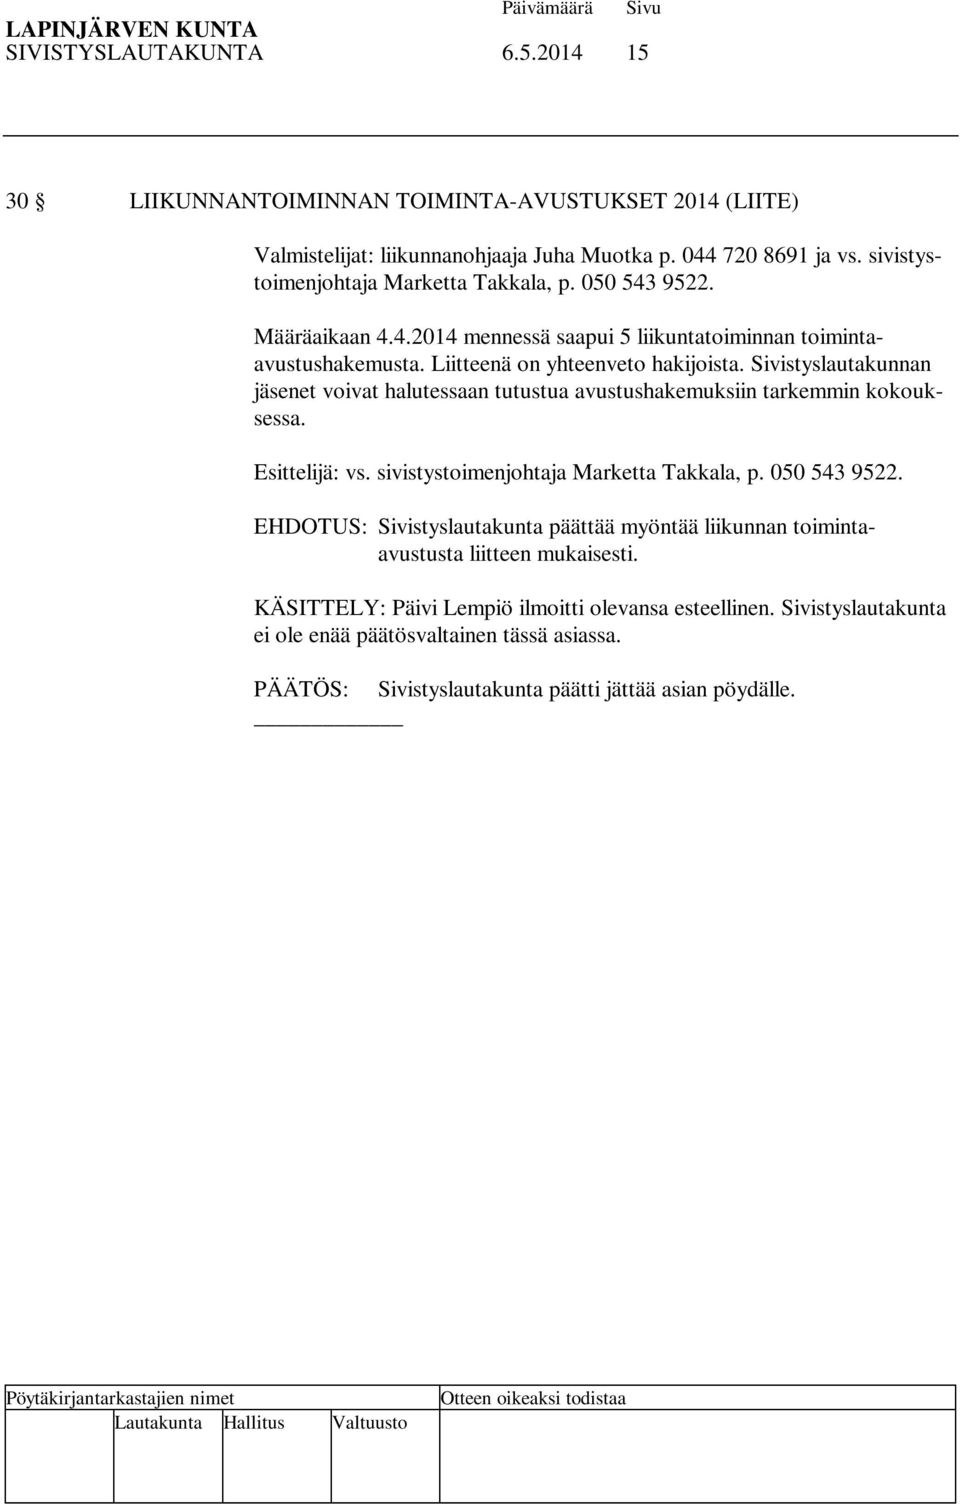 Sivistyslautakunnan jäsenet voivat halutessaan tutustua avustushakemuksiin tarkemmin kokouksessa. Esittelijä: vs. sivistystoimenjohtaja Marketta Takkala, p. 050 543 9522.